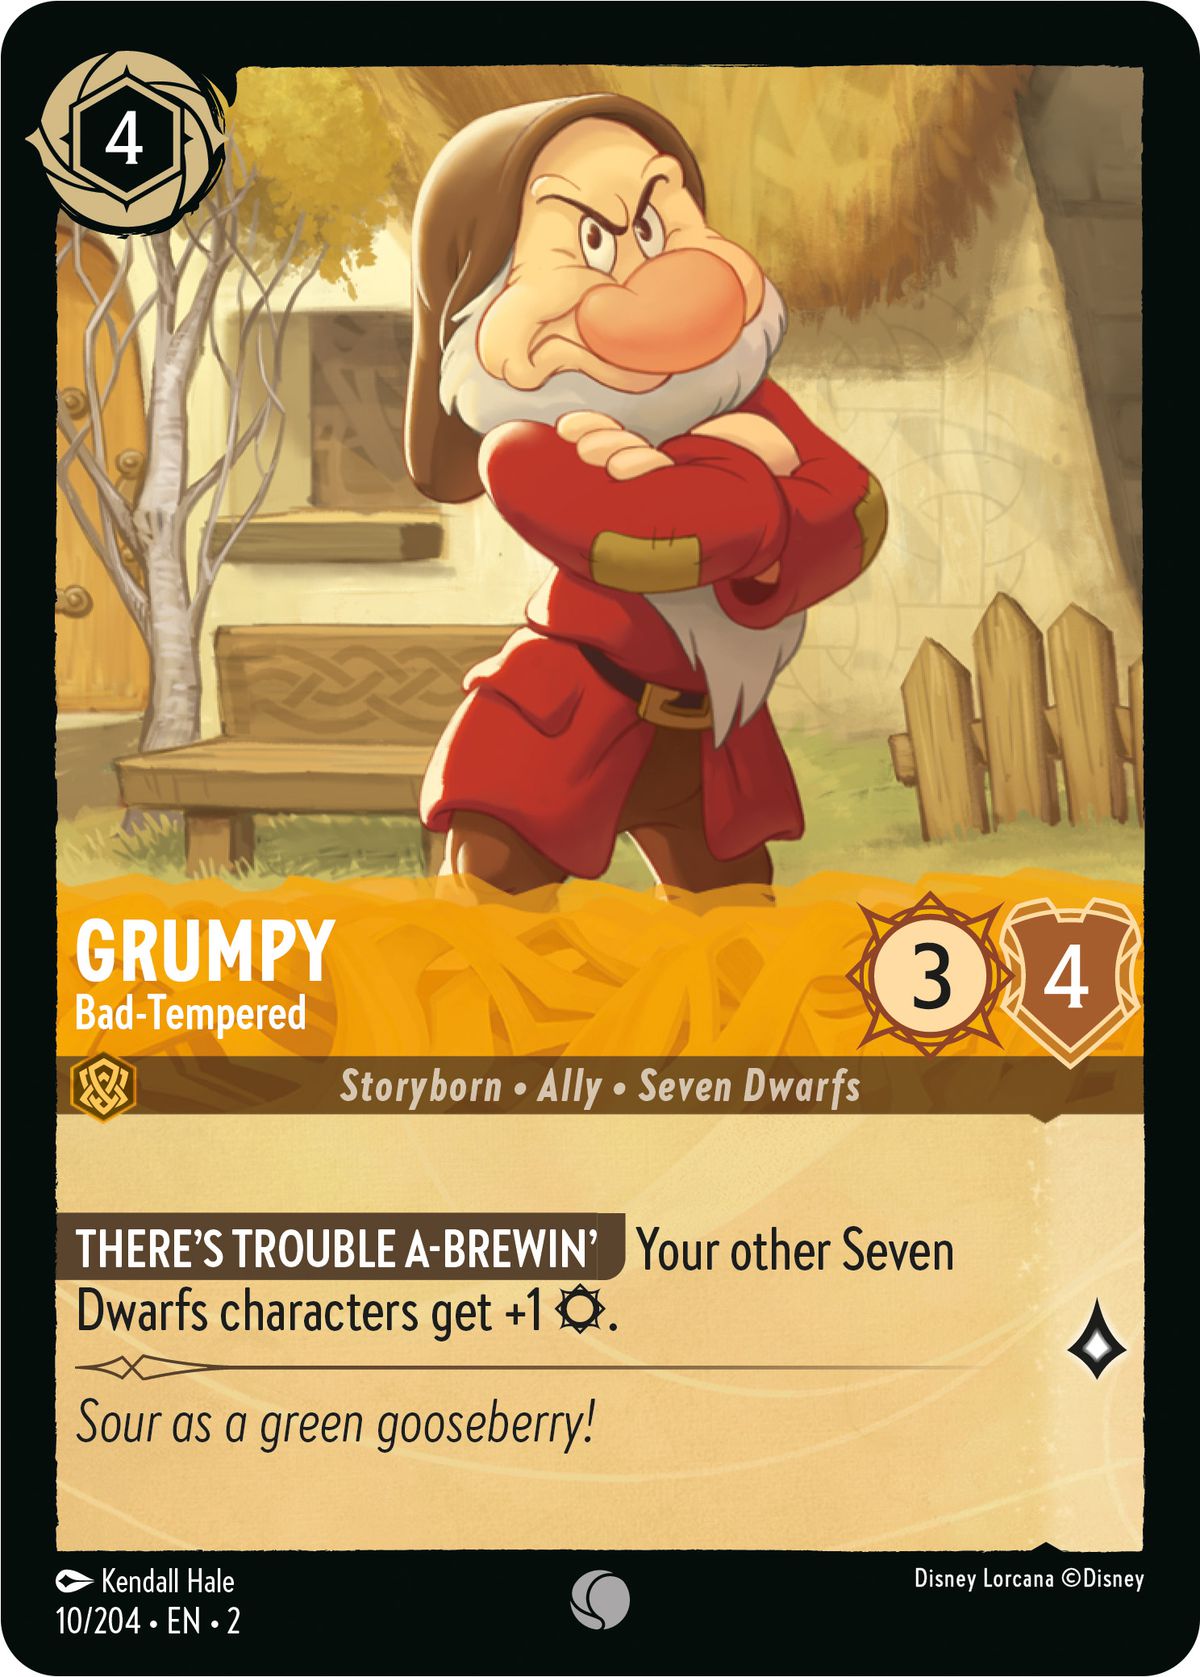 Grumpy, Bad-Tempered는 3, 4 XNUMX명의 드워프 캐릭터로 서로의 드워프에게 하나의 공격을 추가합니다.